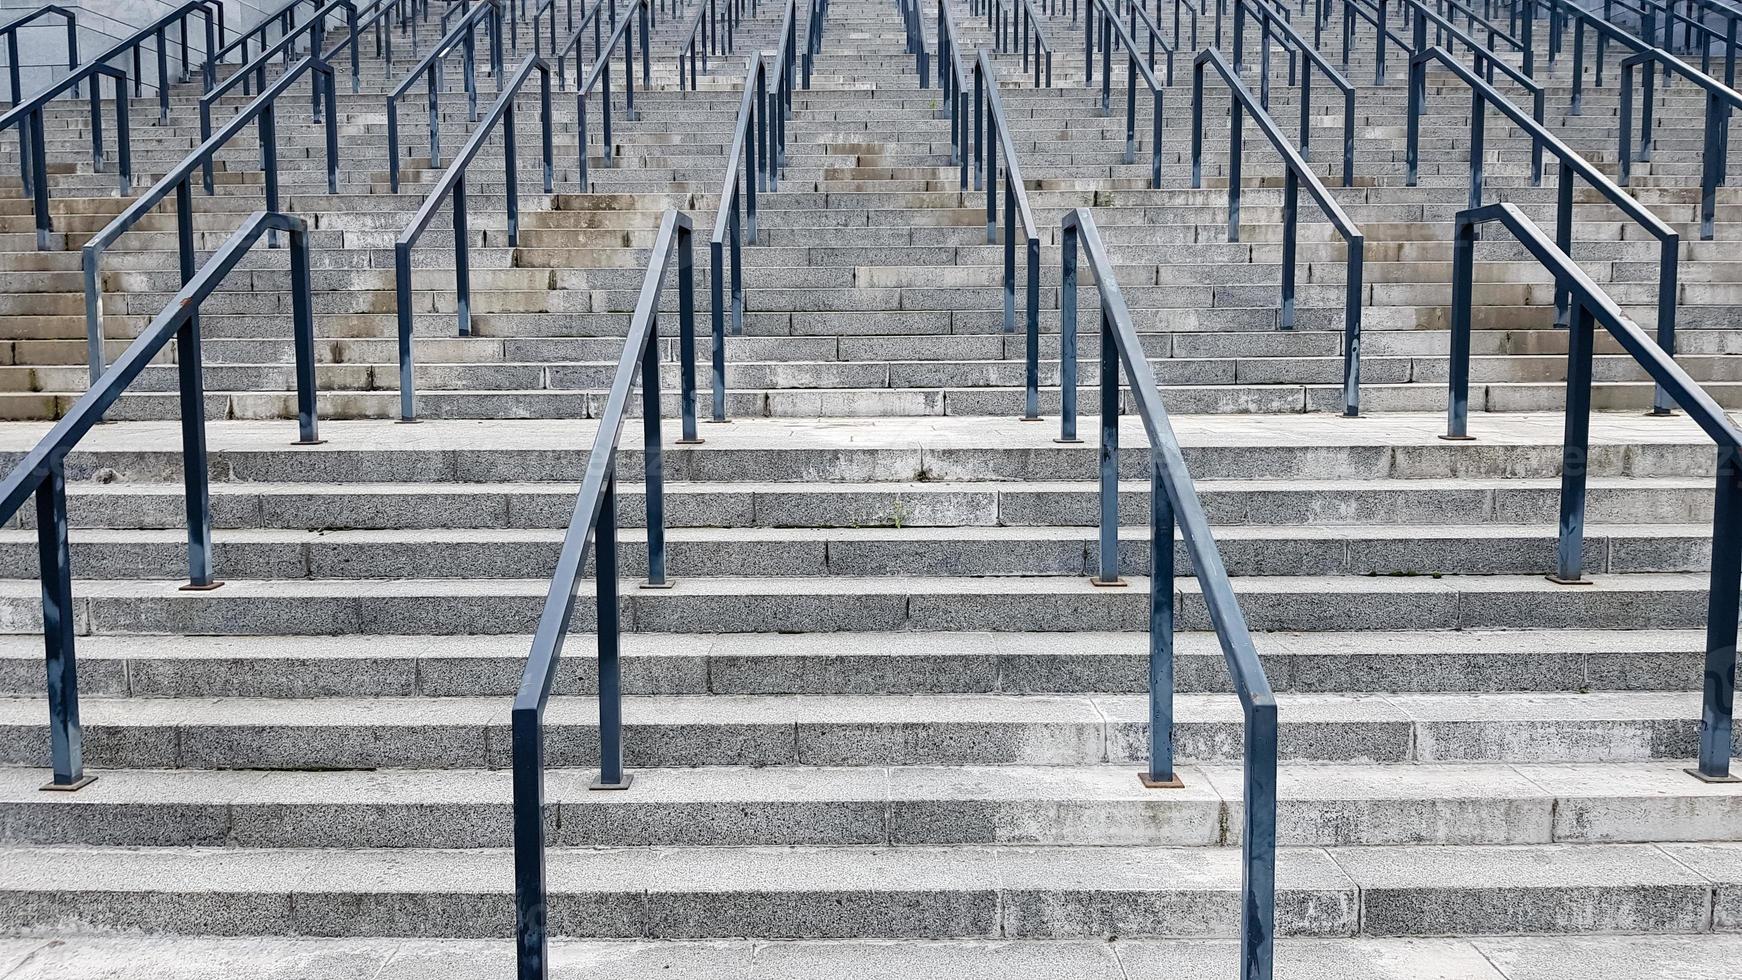 externe mehrstufige Steintreppe. Es gibt viele Treppen und Geländer aus Metall. viele Schritte in einer städtischen Umgebung, symbolischer abstrakter Hintergrund. foto